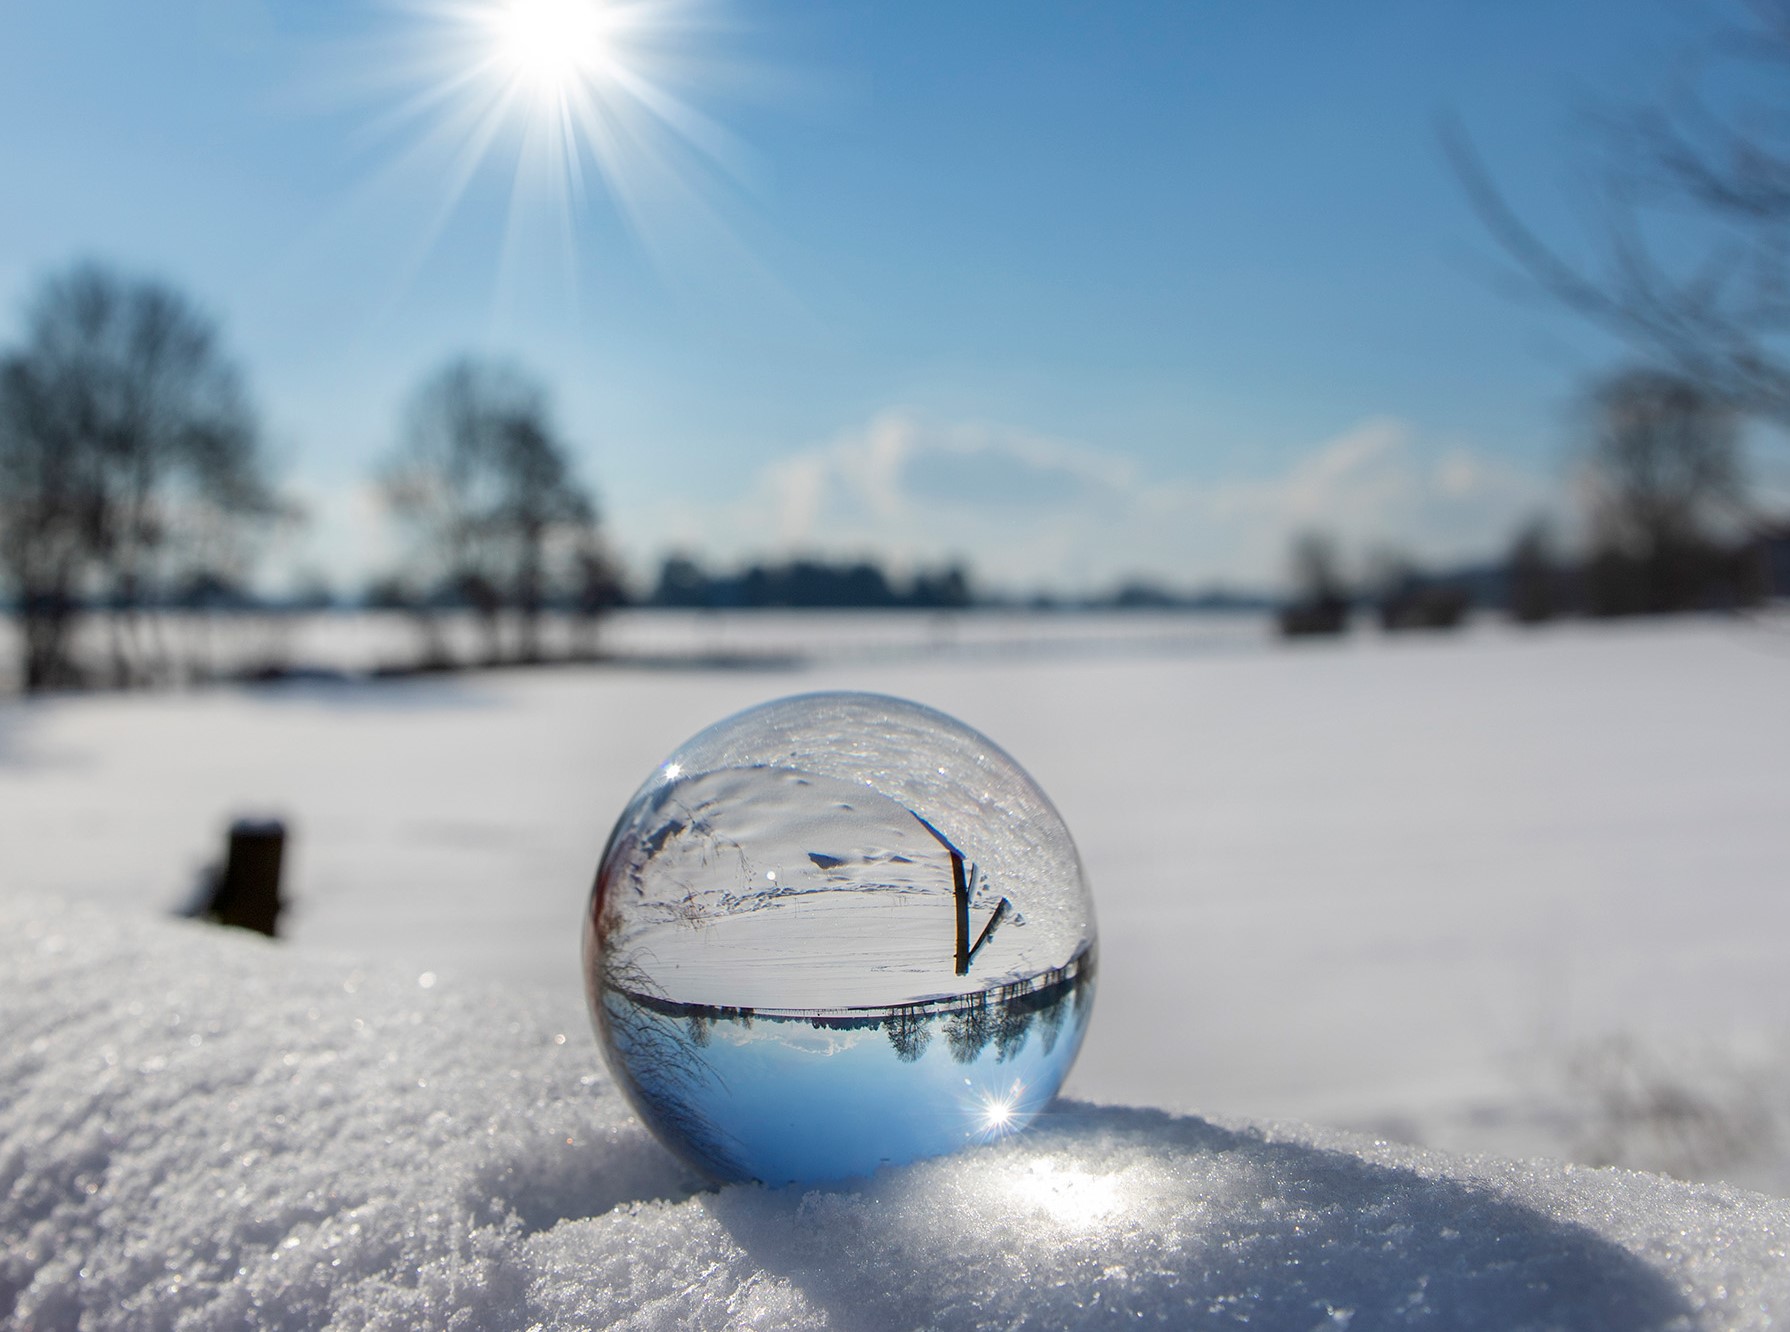 Glaskugel liegt in schneebedeckter Landschaft. Der Himmel und die Sonnenstrahlen spiegeln sich in der Glaskugel.